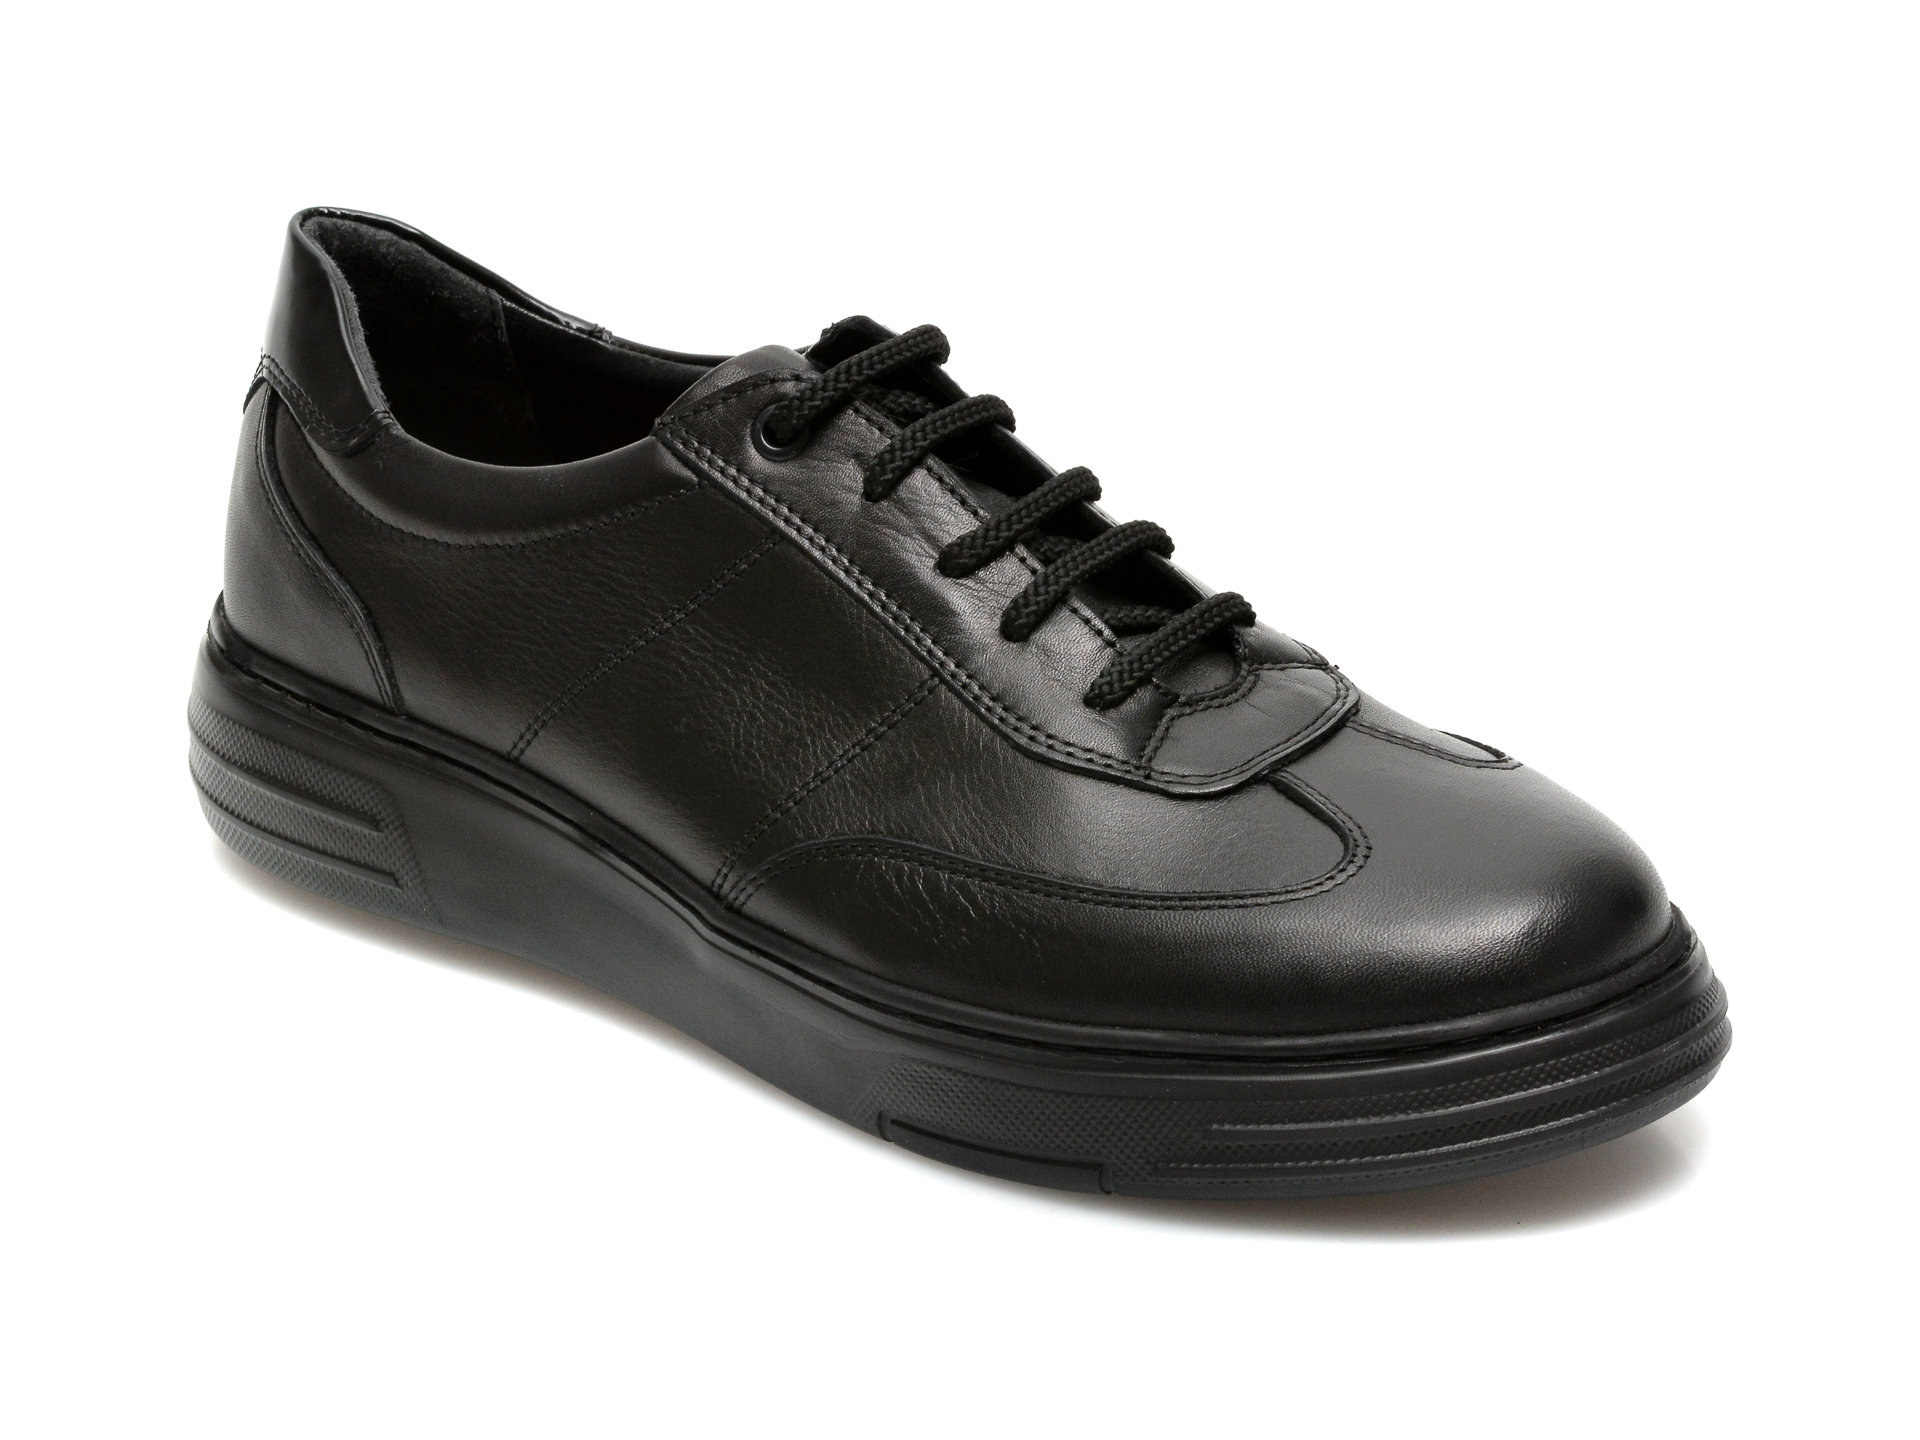 Pantofi OTTER negri, E193, din piele naturala Otter poza reduceri 2021